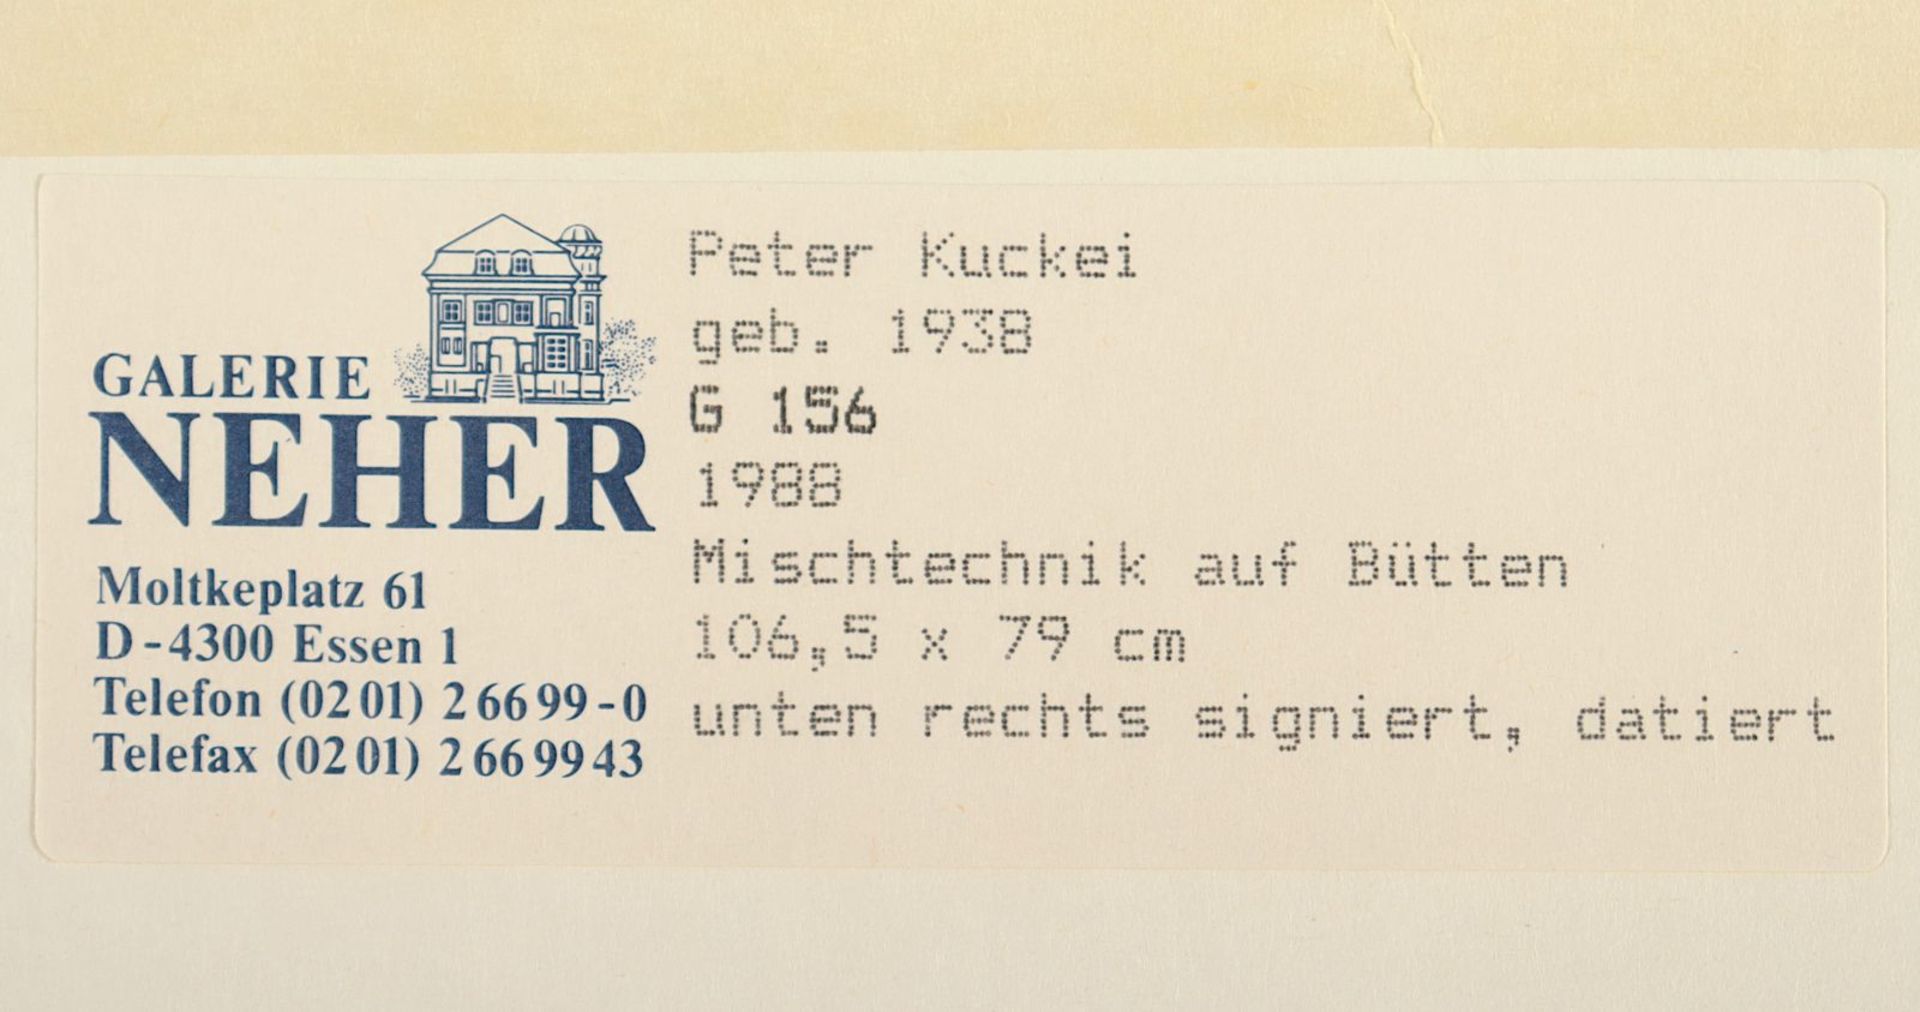 Kuckei, Peter, Mischtechnik/Papier, R. - Bild 4 aus 4